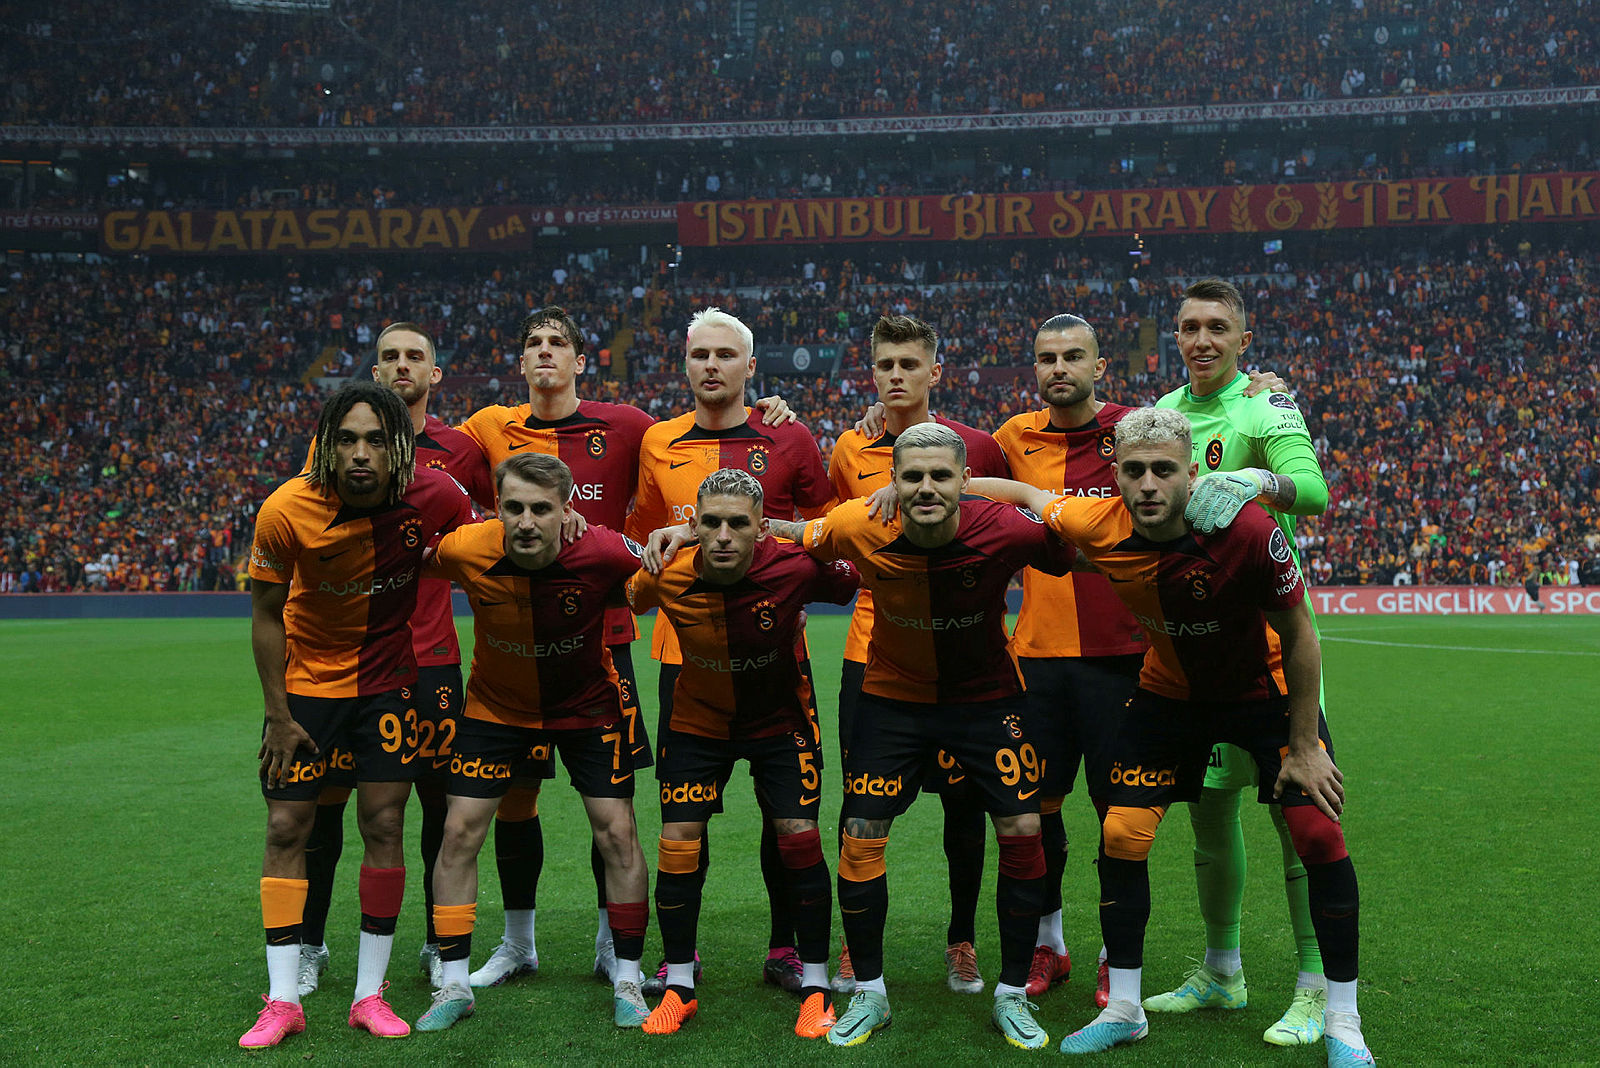 TRANSFER HABERİ: Galatasaray’da sürpriz karar! Yunus Akgün’ün yerine geliyor